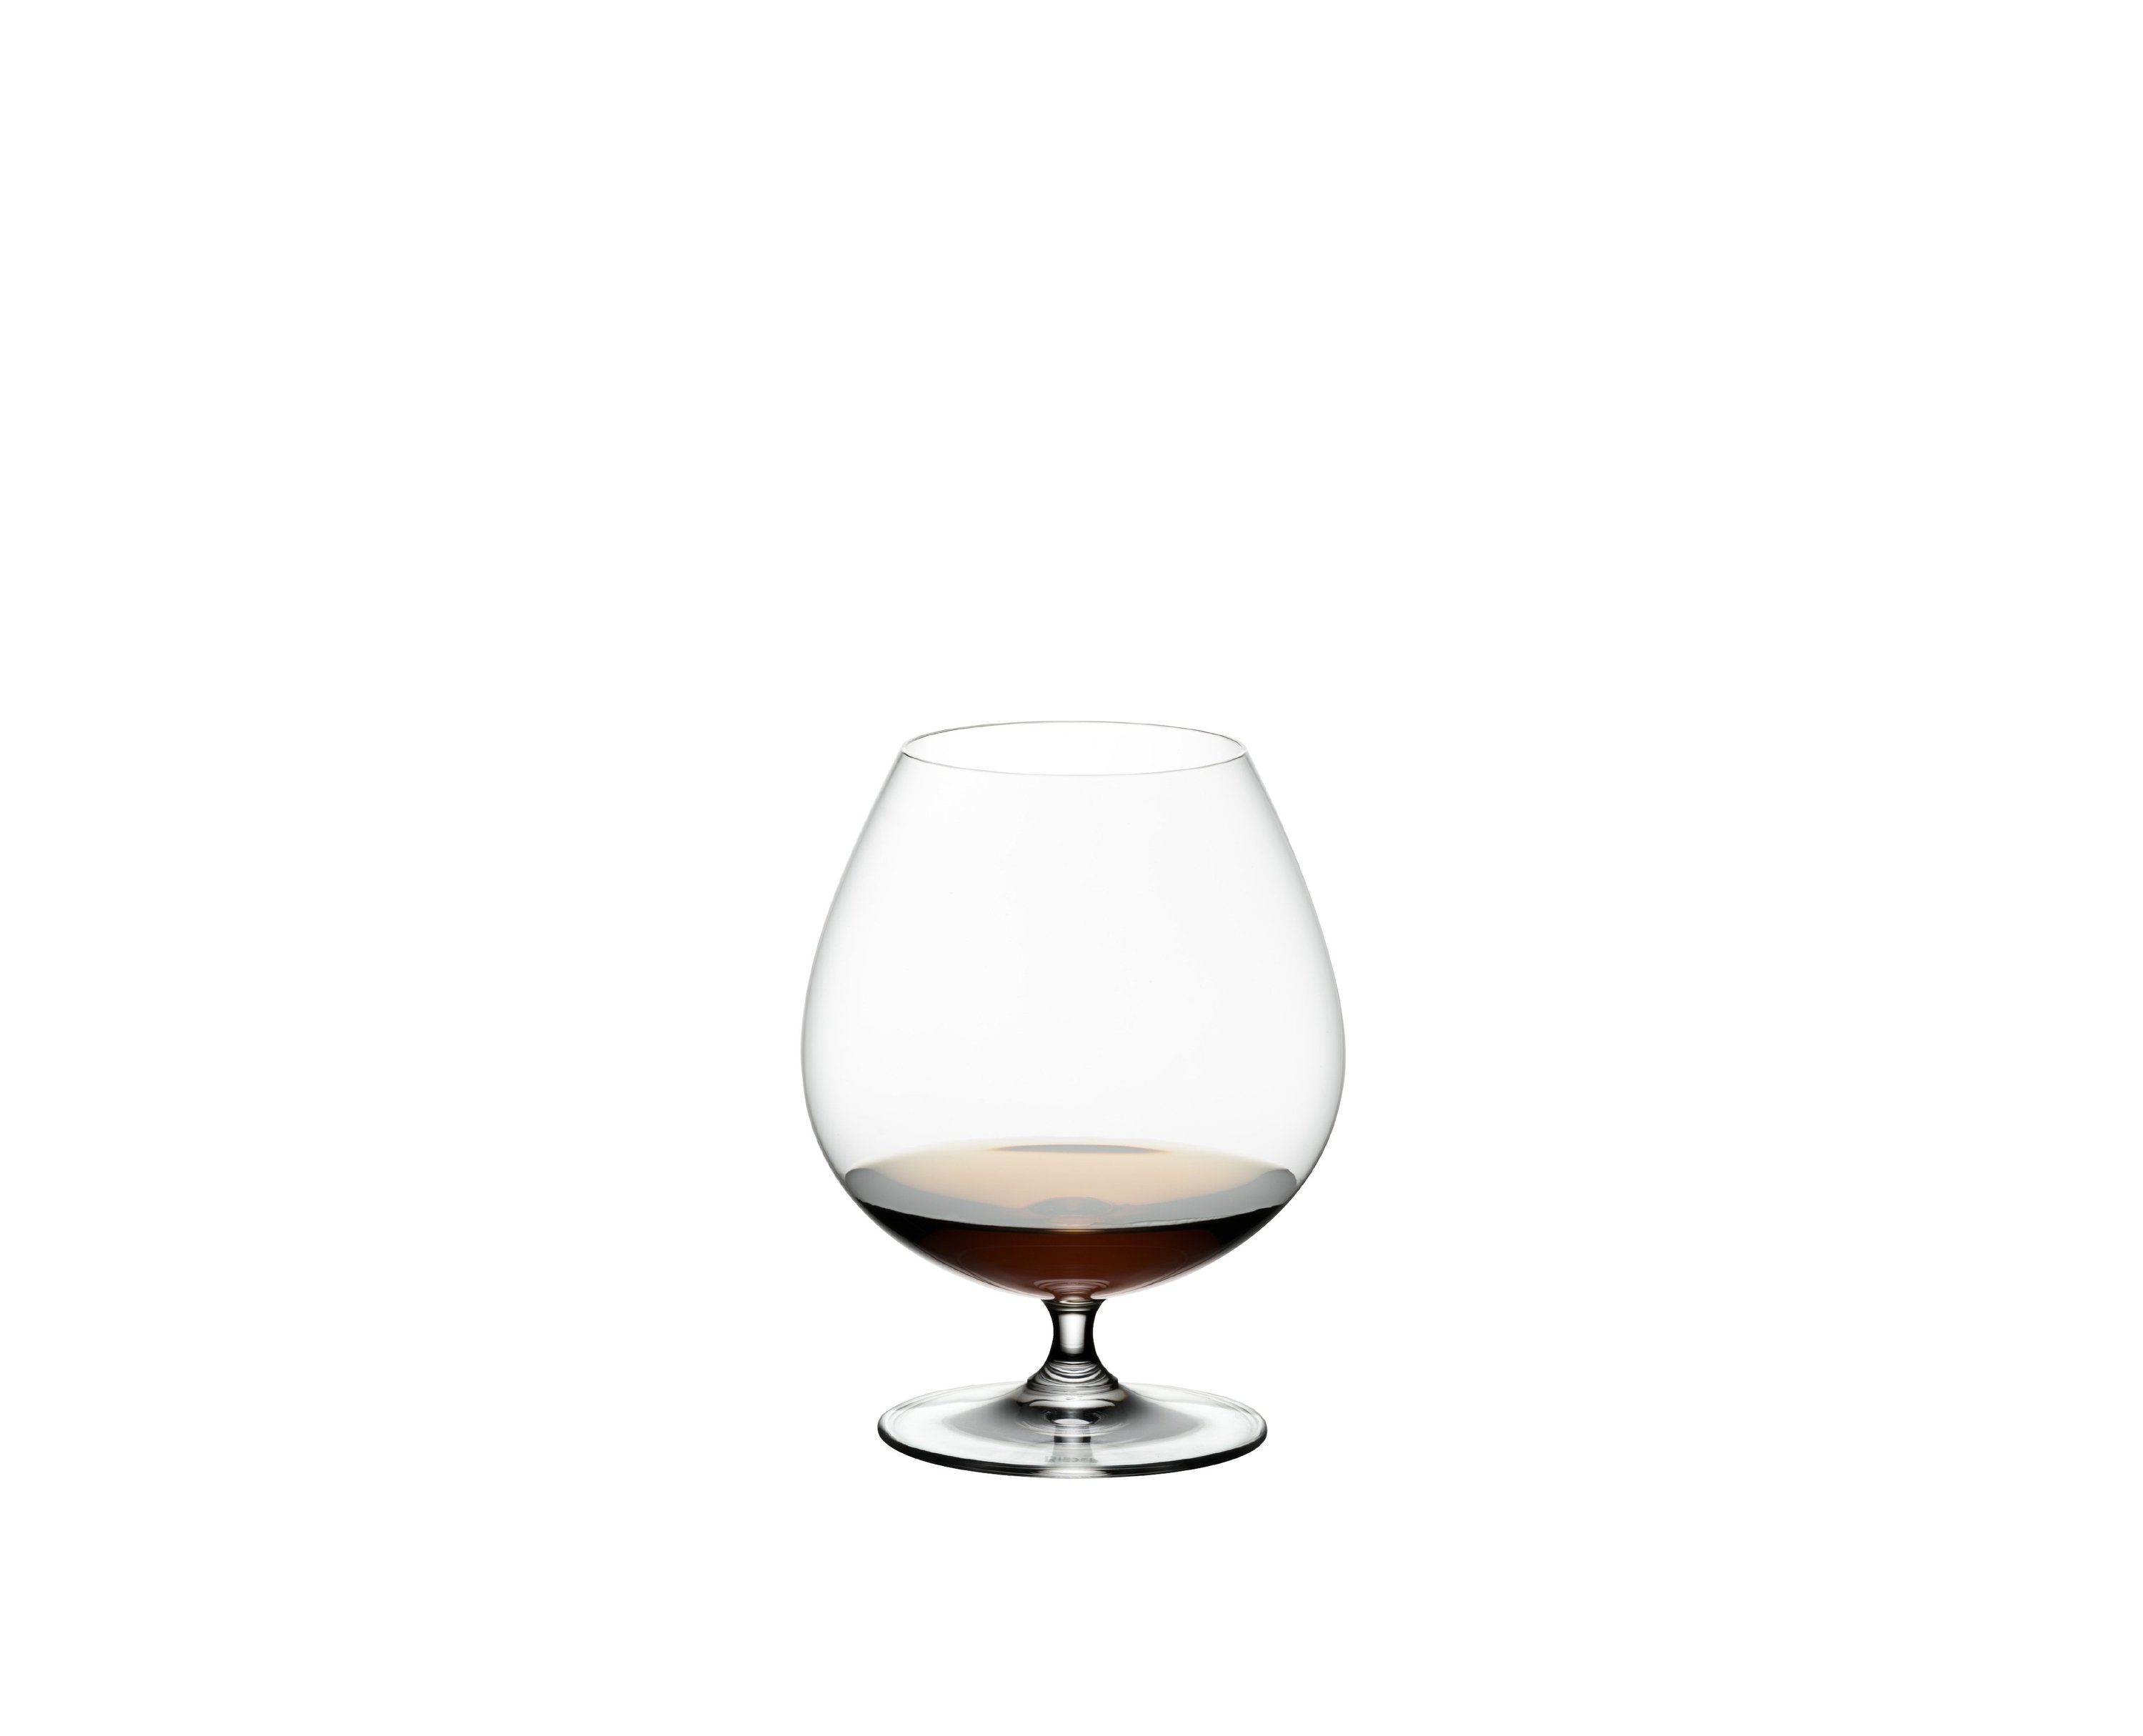 RIEDEL THE WINE GLASS COMPANY Glas Riedel Vinum Brandy 2er-Set 6416/18, Glas